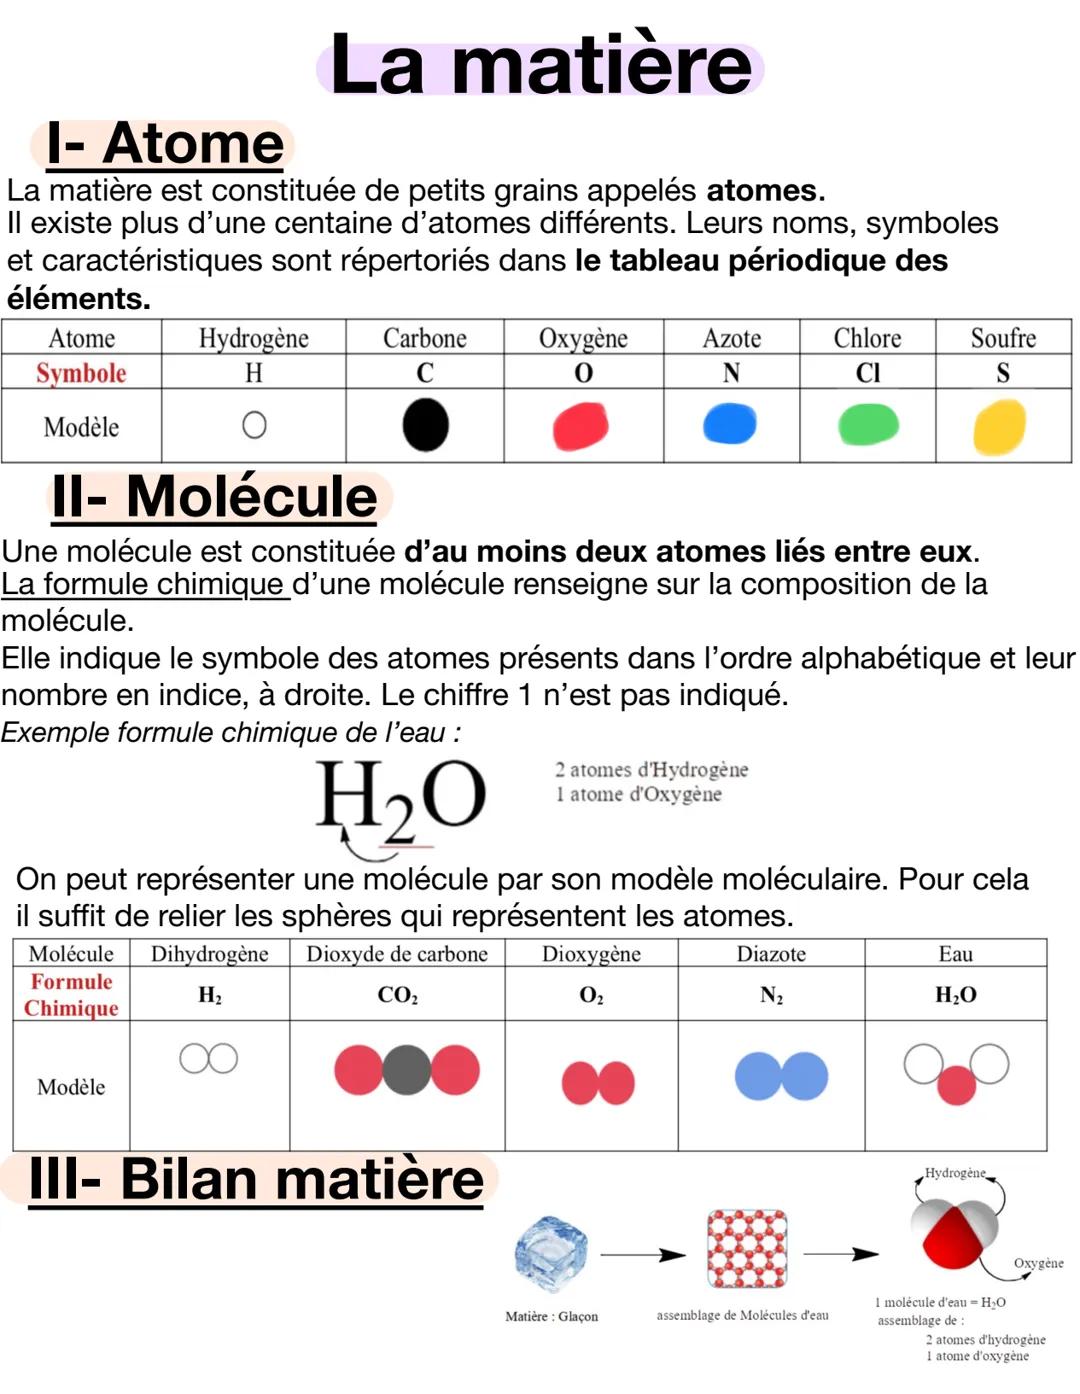 I- Atome
La matière est constituée de petits grains appelés atomes.
Il existe plus d'une centaine d'atomes différents. Leurs noms, symboles
